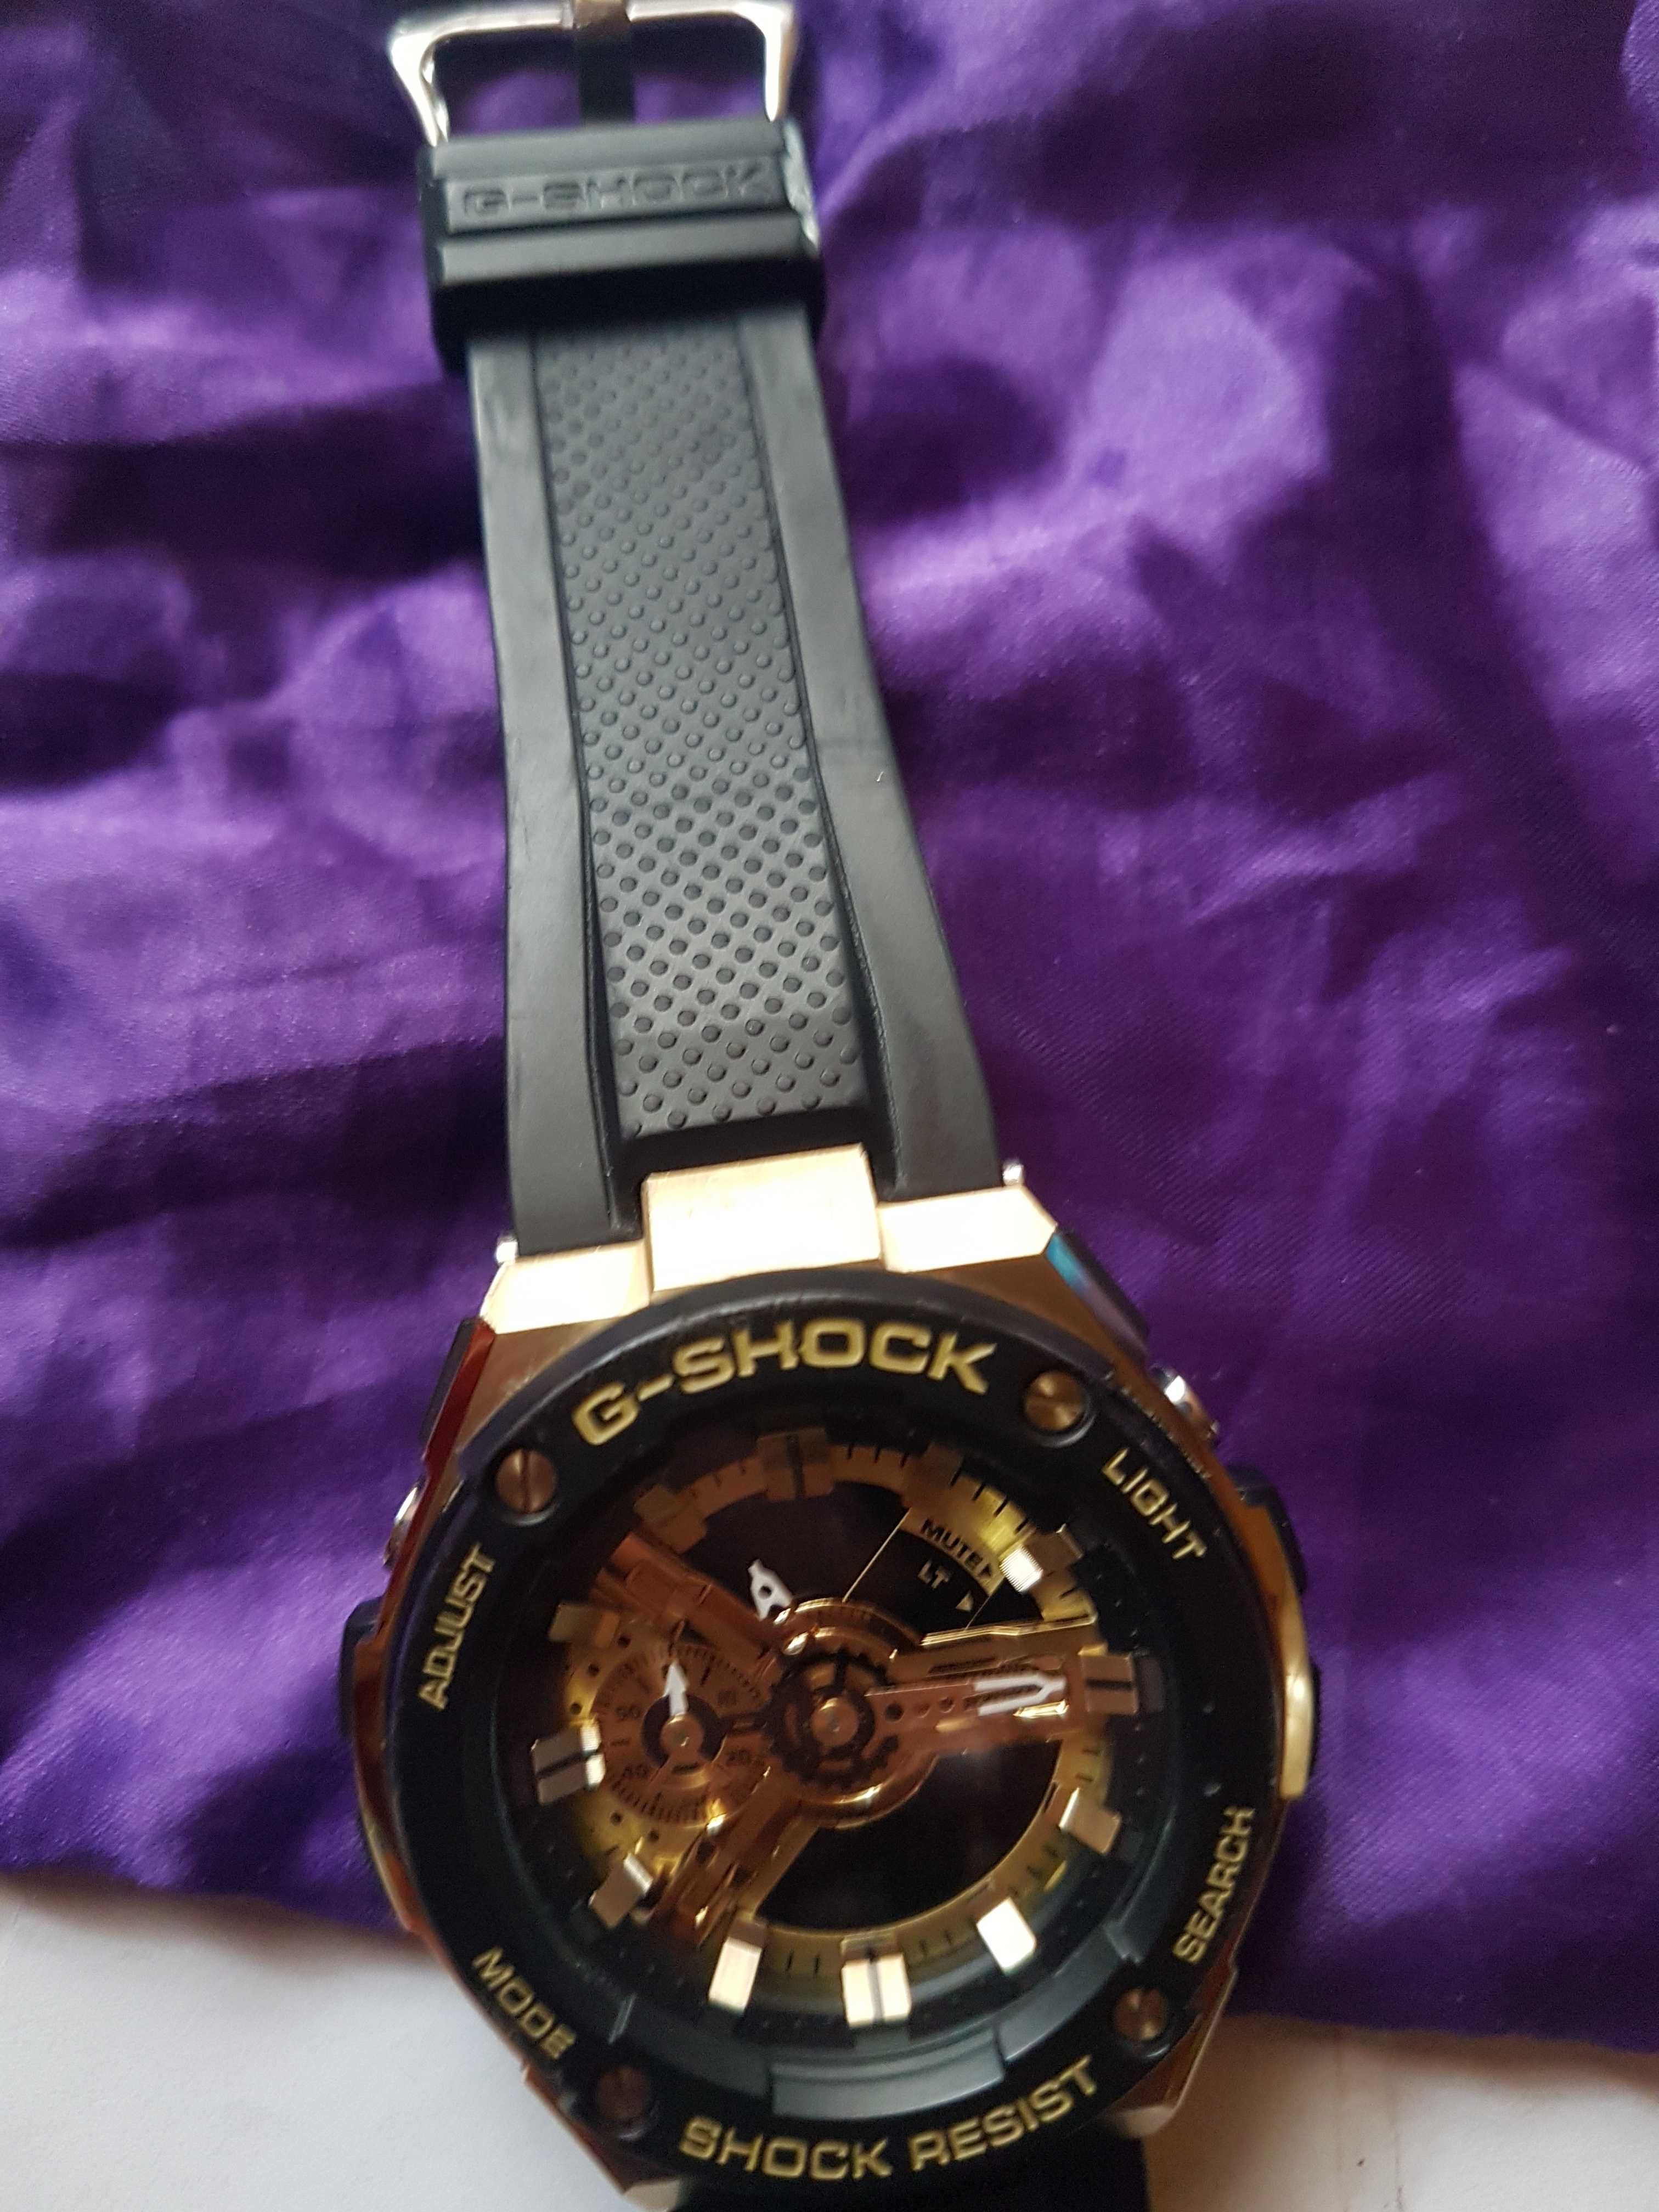 Piekny Zegarek G-SHOCK  400  zakupiony w anglii orginalny  malo  noszo